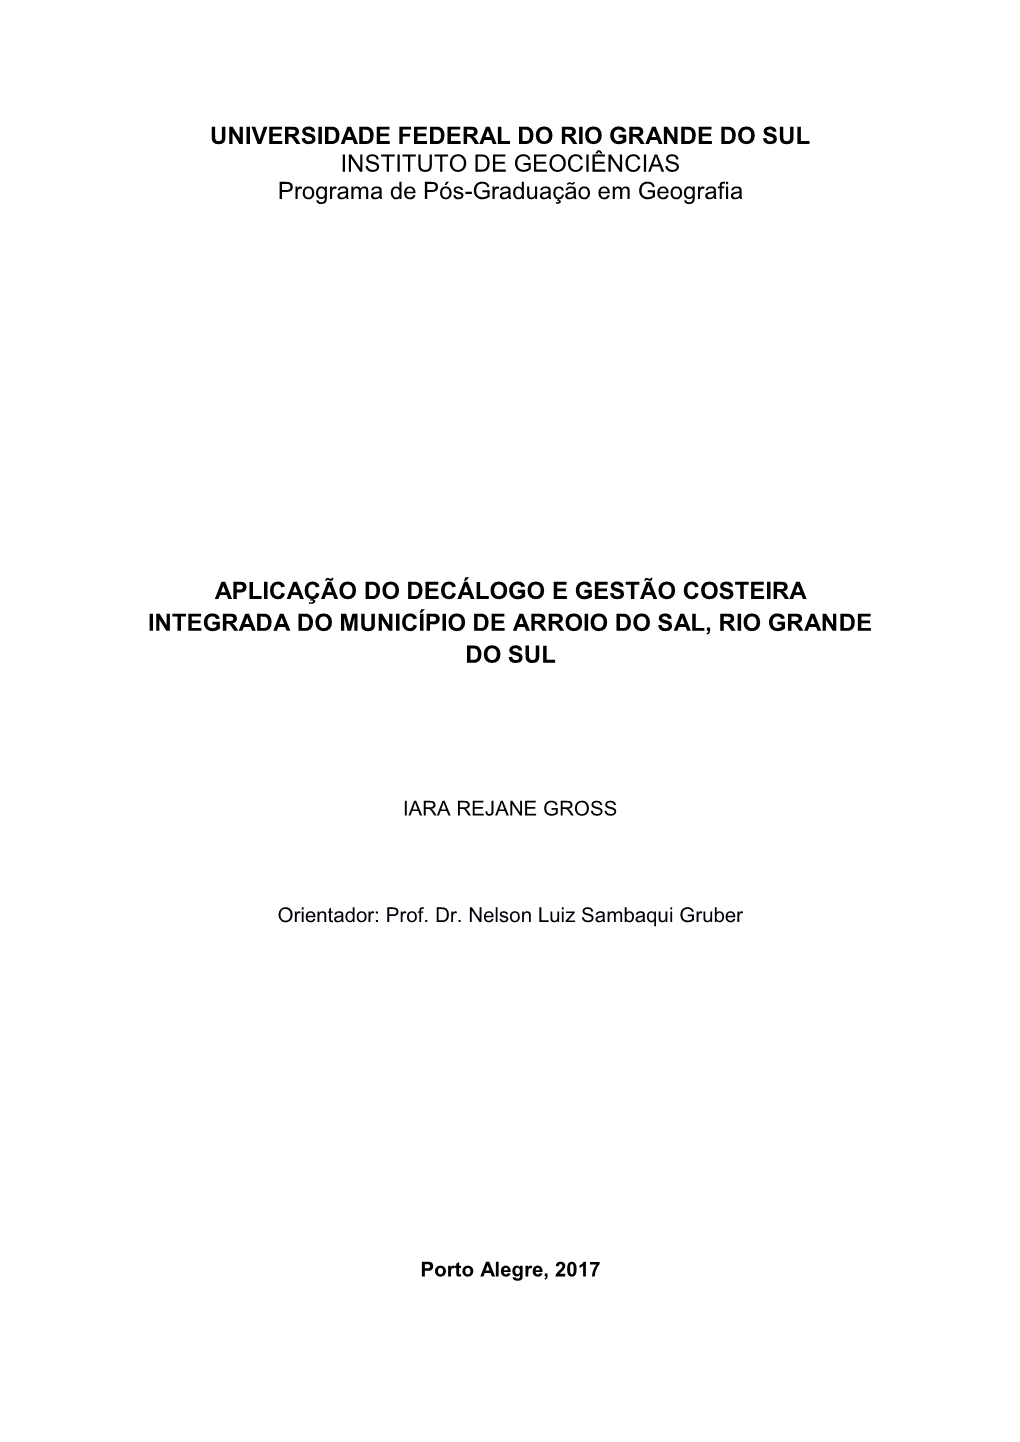 UNIVERSIDADE FEDERAL DO RIO GRANDE DO SUL INSTITUTO DE GEOCIÊNCIAS Programa De Pós-Graduação Em Geografia